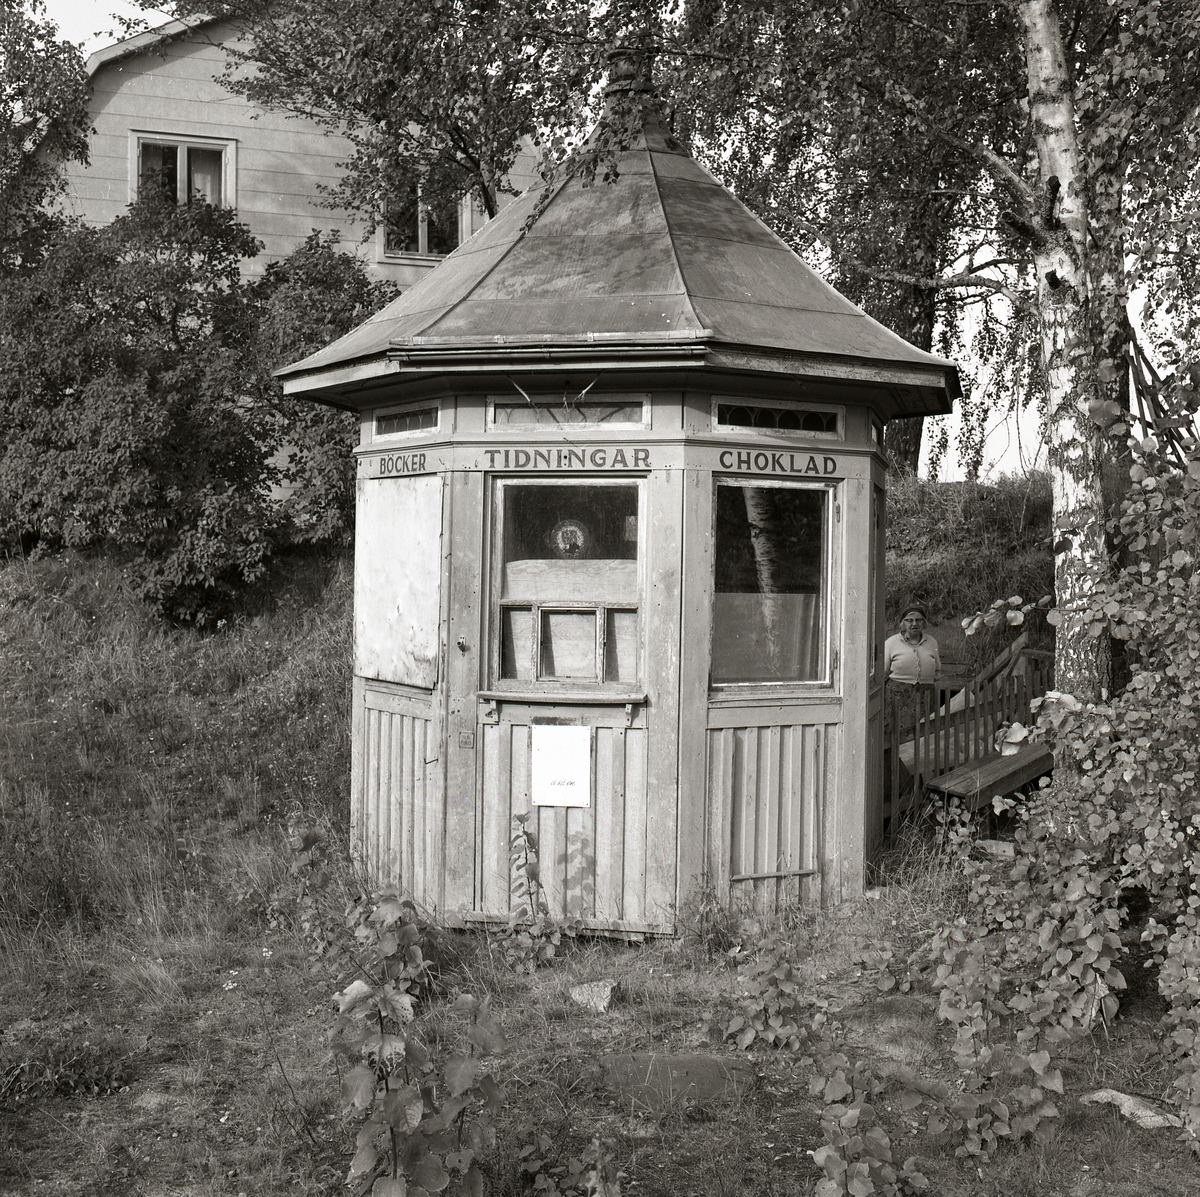 En gammal kiosk står under ett träd omgiven av gräs och buskar. Ett bostadshus syns i bakgrunden, Ångermanland 1974.